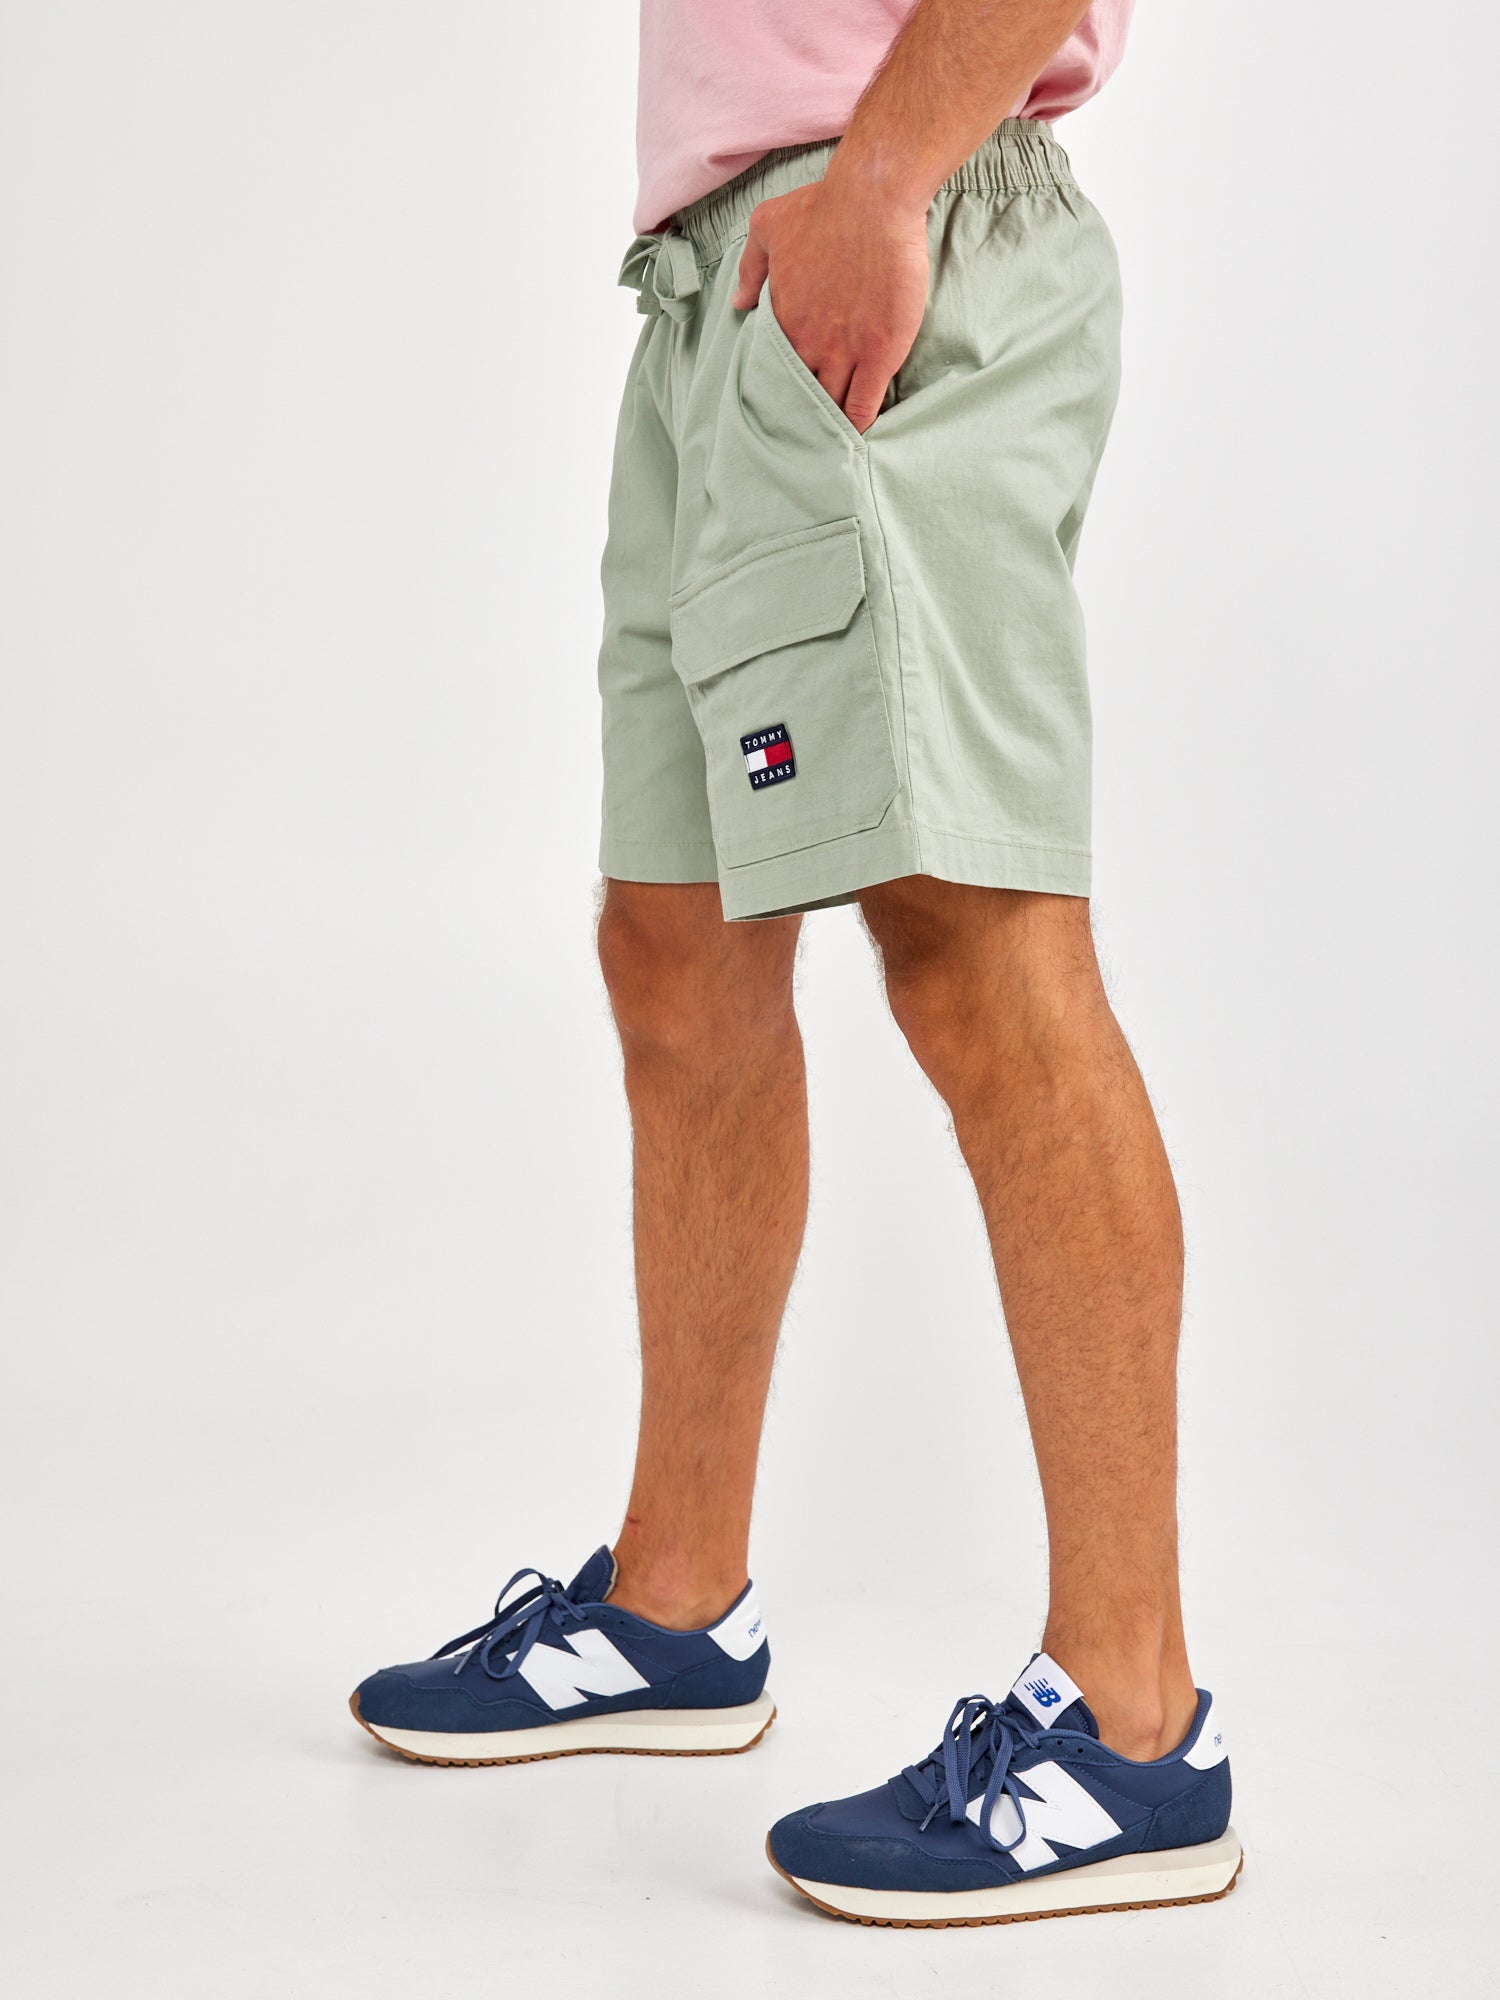 מכנסיים קצרים עם לוגו רקום- Tommy Hilfiger|טומי הילפיגר